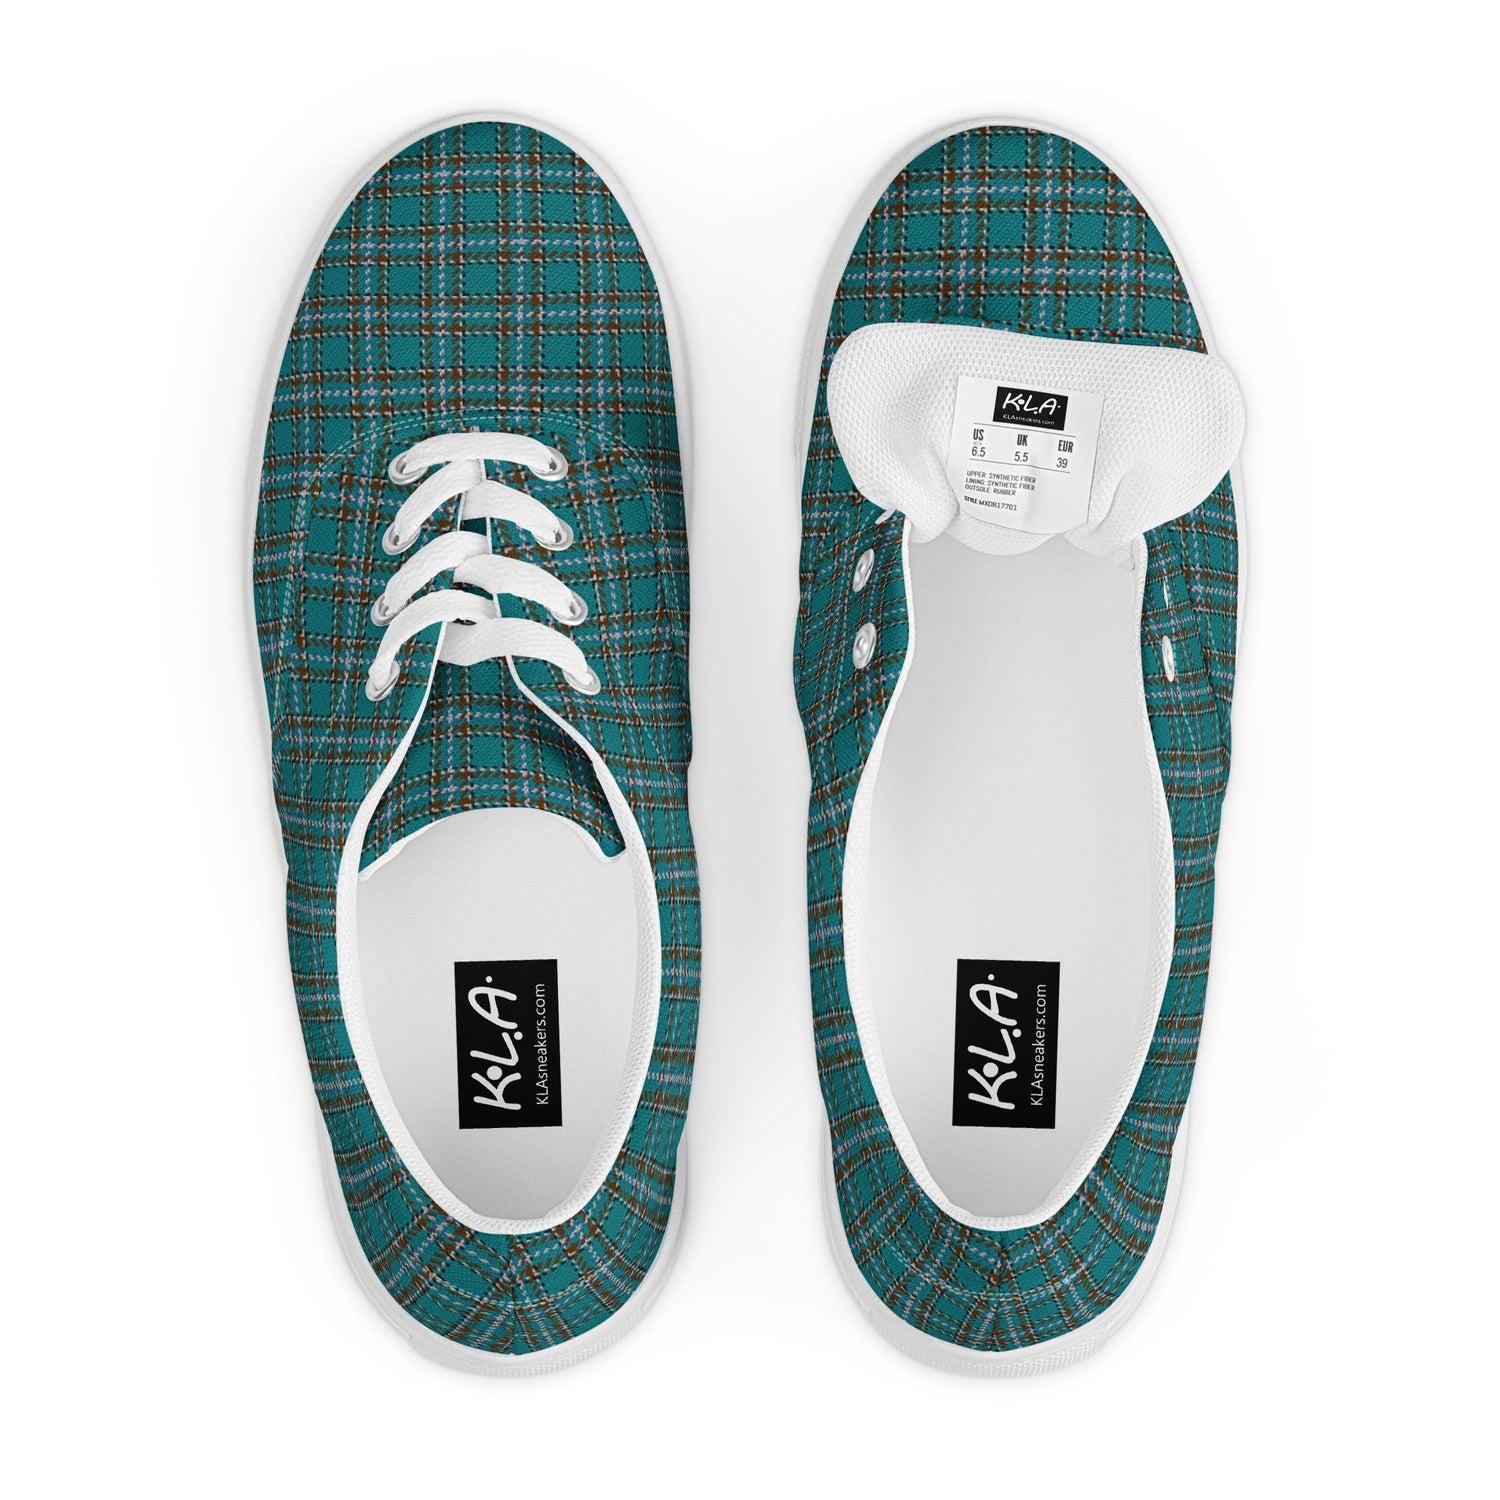 klasneakers Men’s lace-up canvas shoes - Spek Plaid Tartan